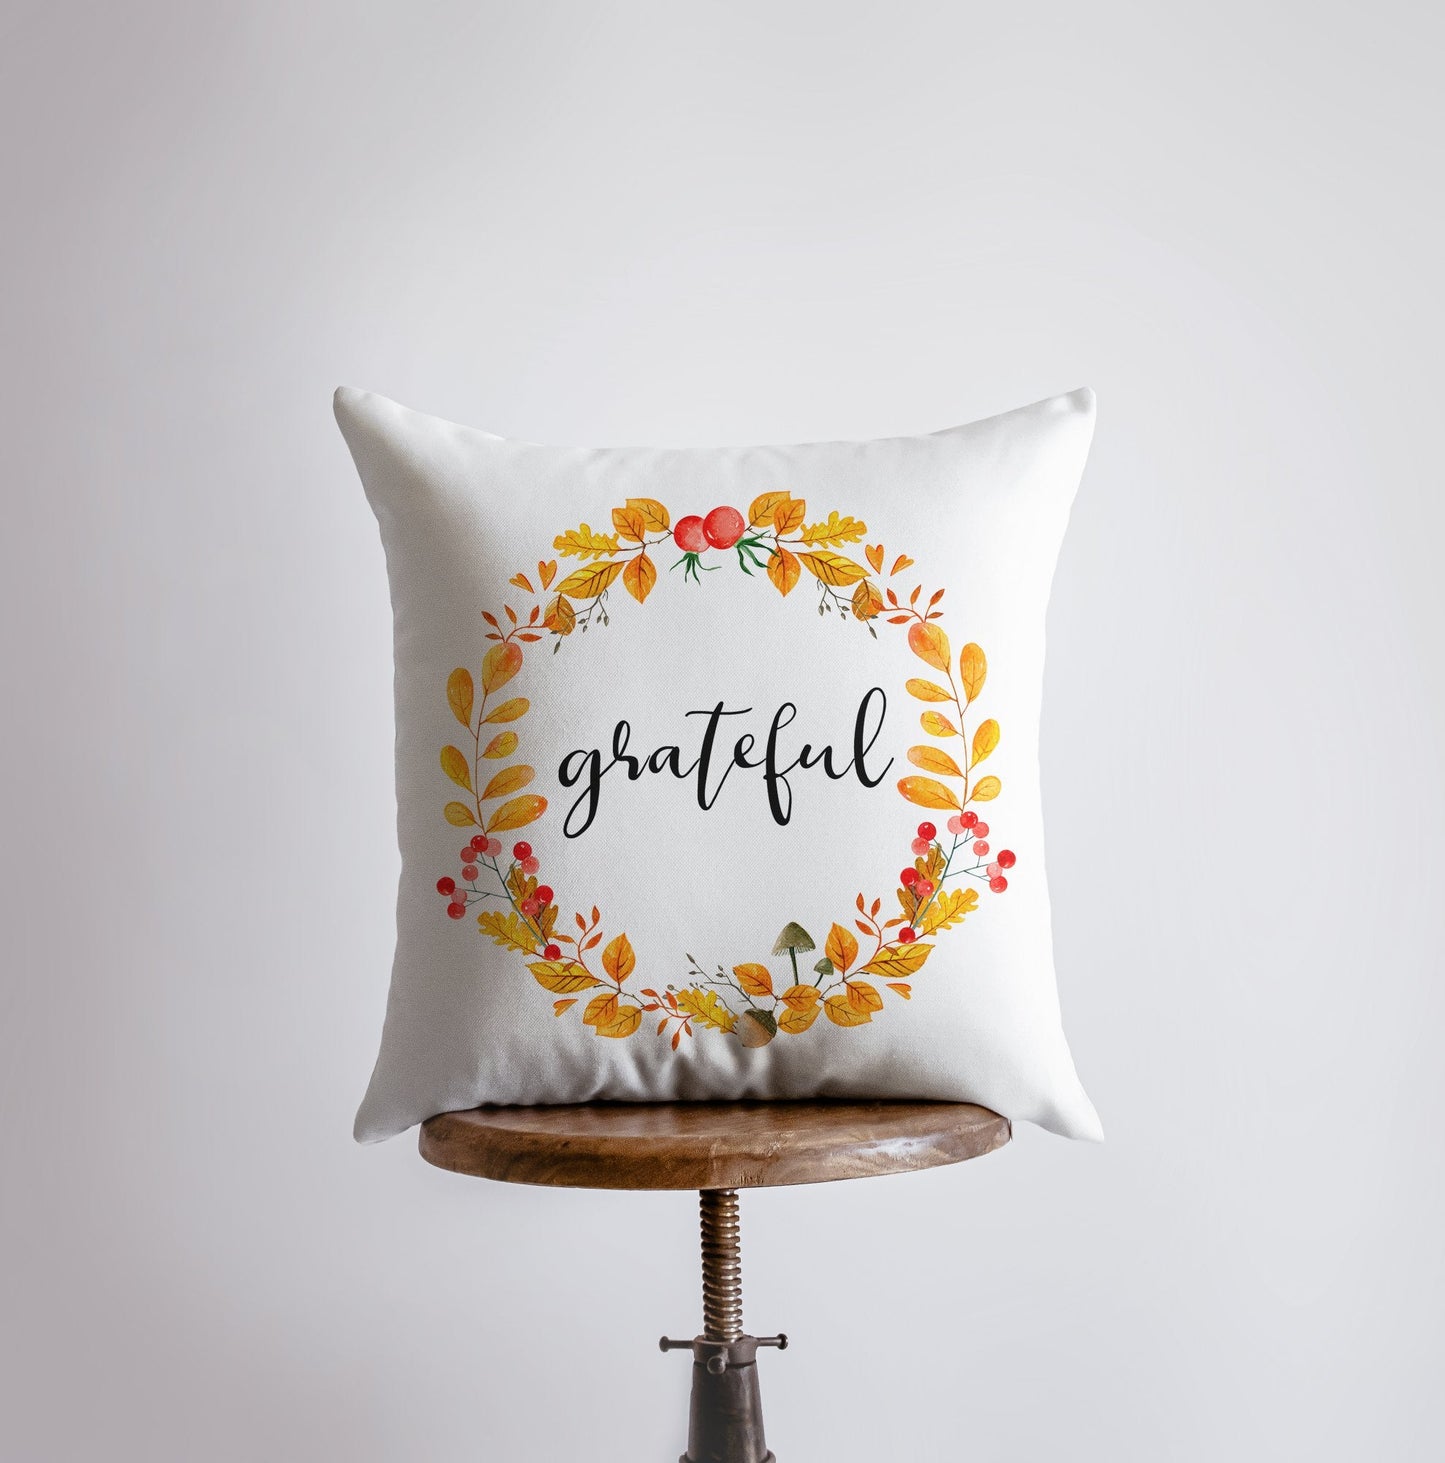 Grateful Pillow Cover |  Fall Thanksgiving Decor | Farmhouse Pillows |